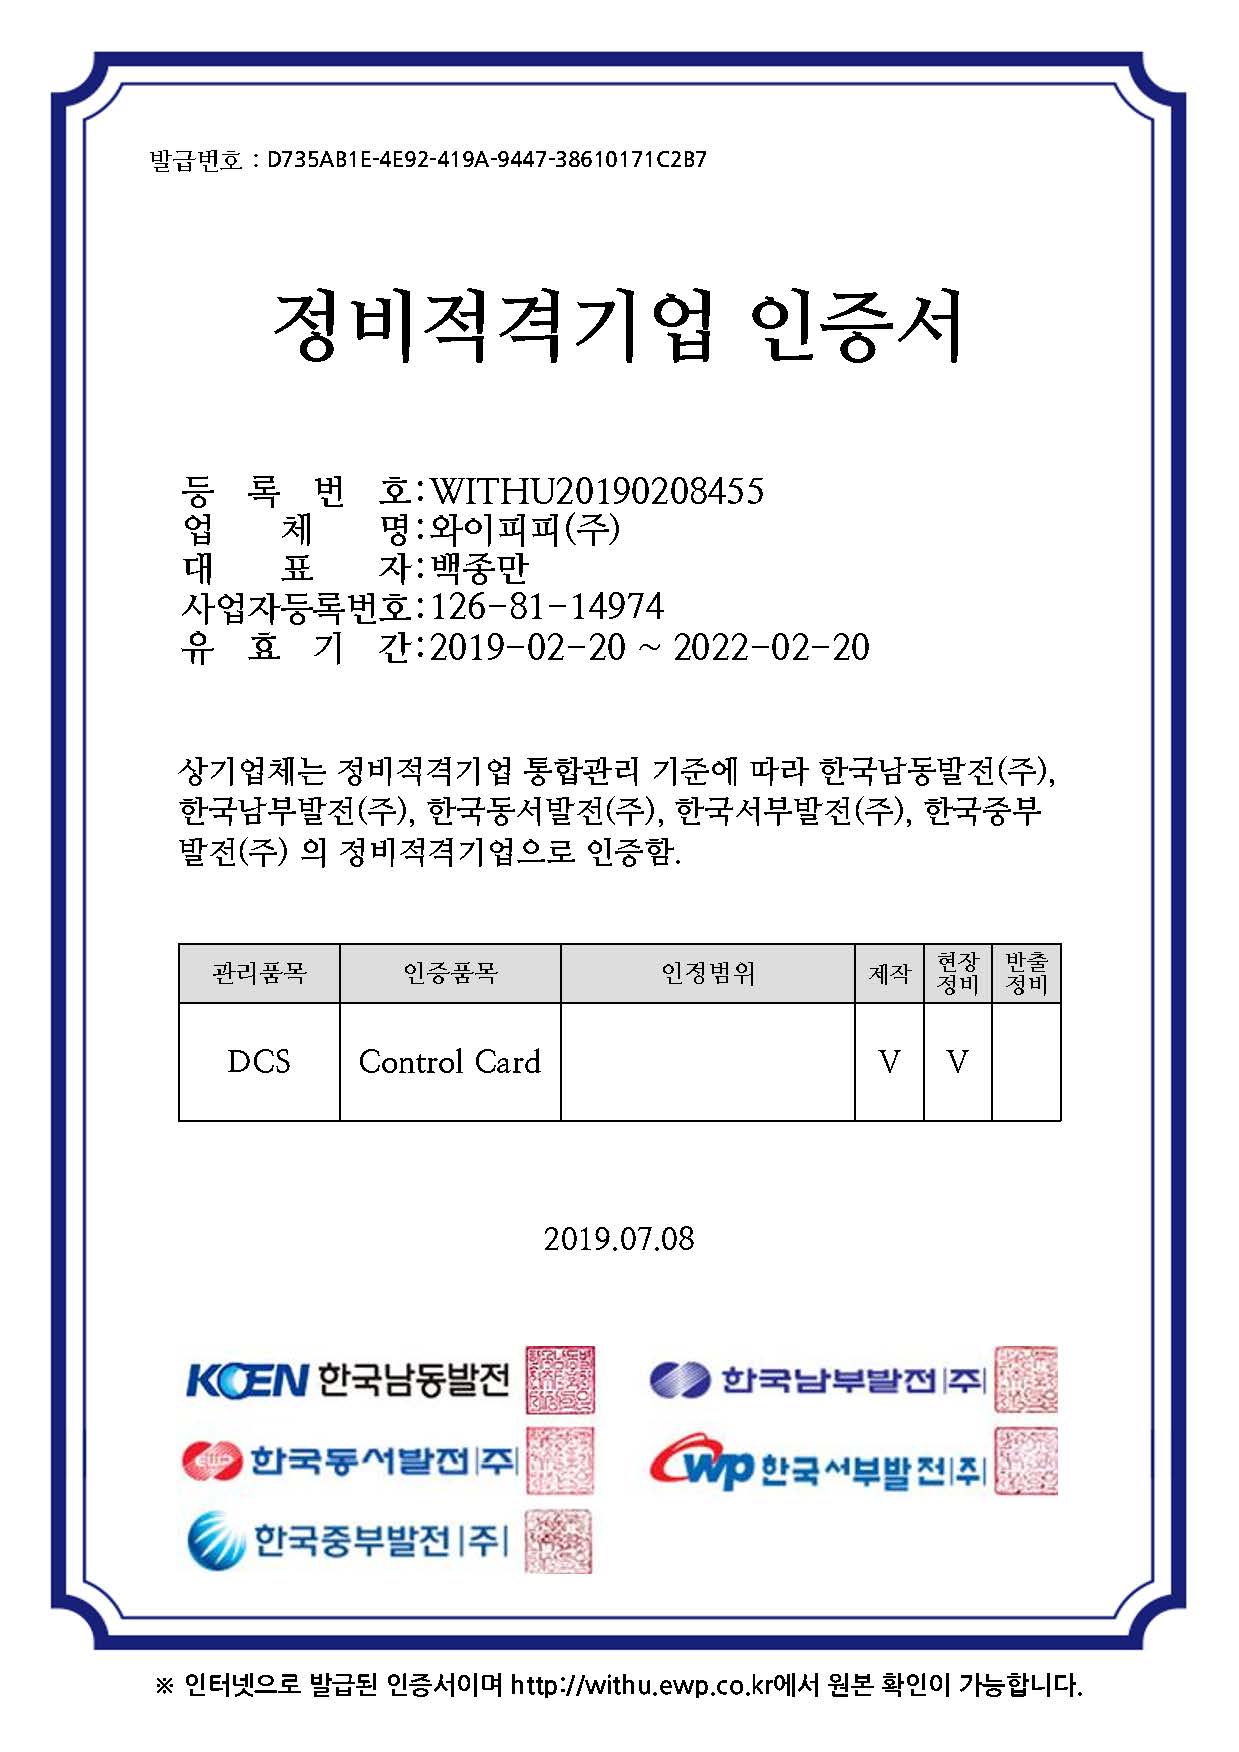 발전5개사-DCS_Control card 정비적격기업 인증서.jpg